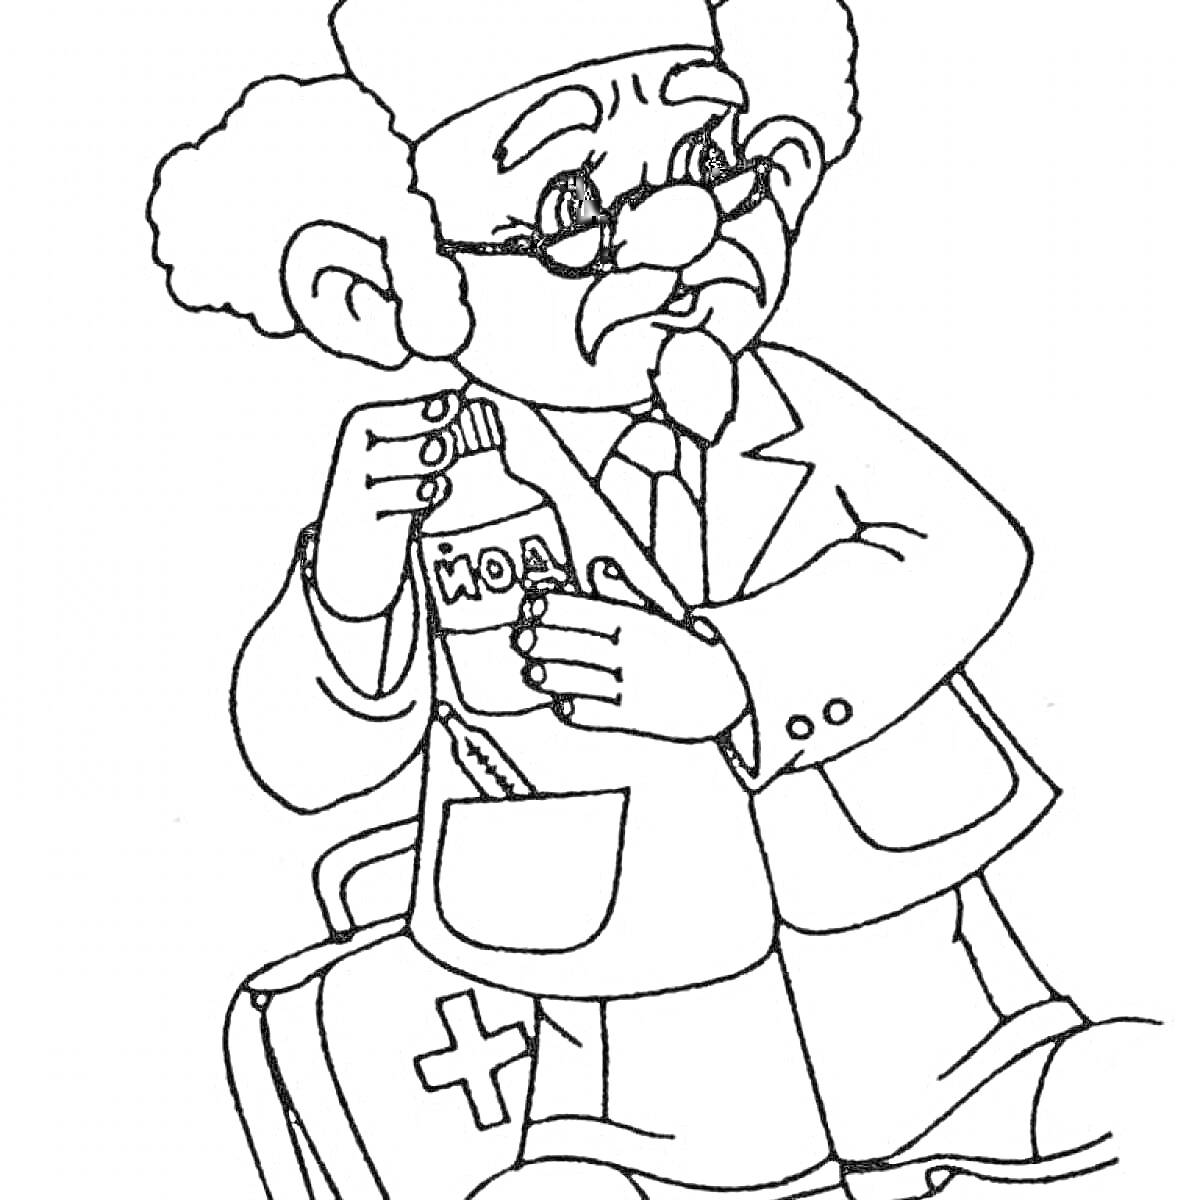 Раскраска Доктор Айболит с аптечкой и бутылочкой лекарства